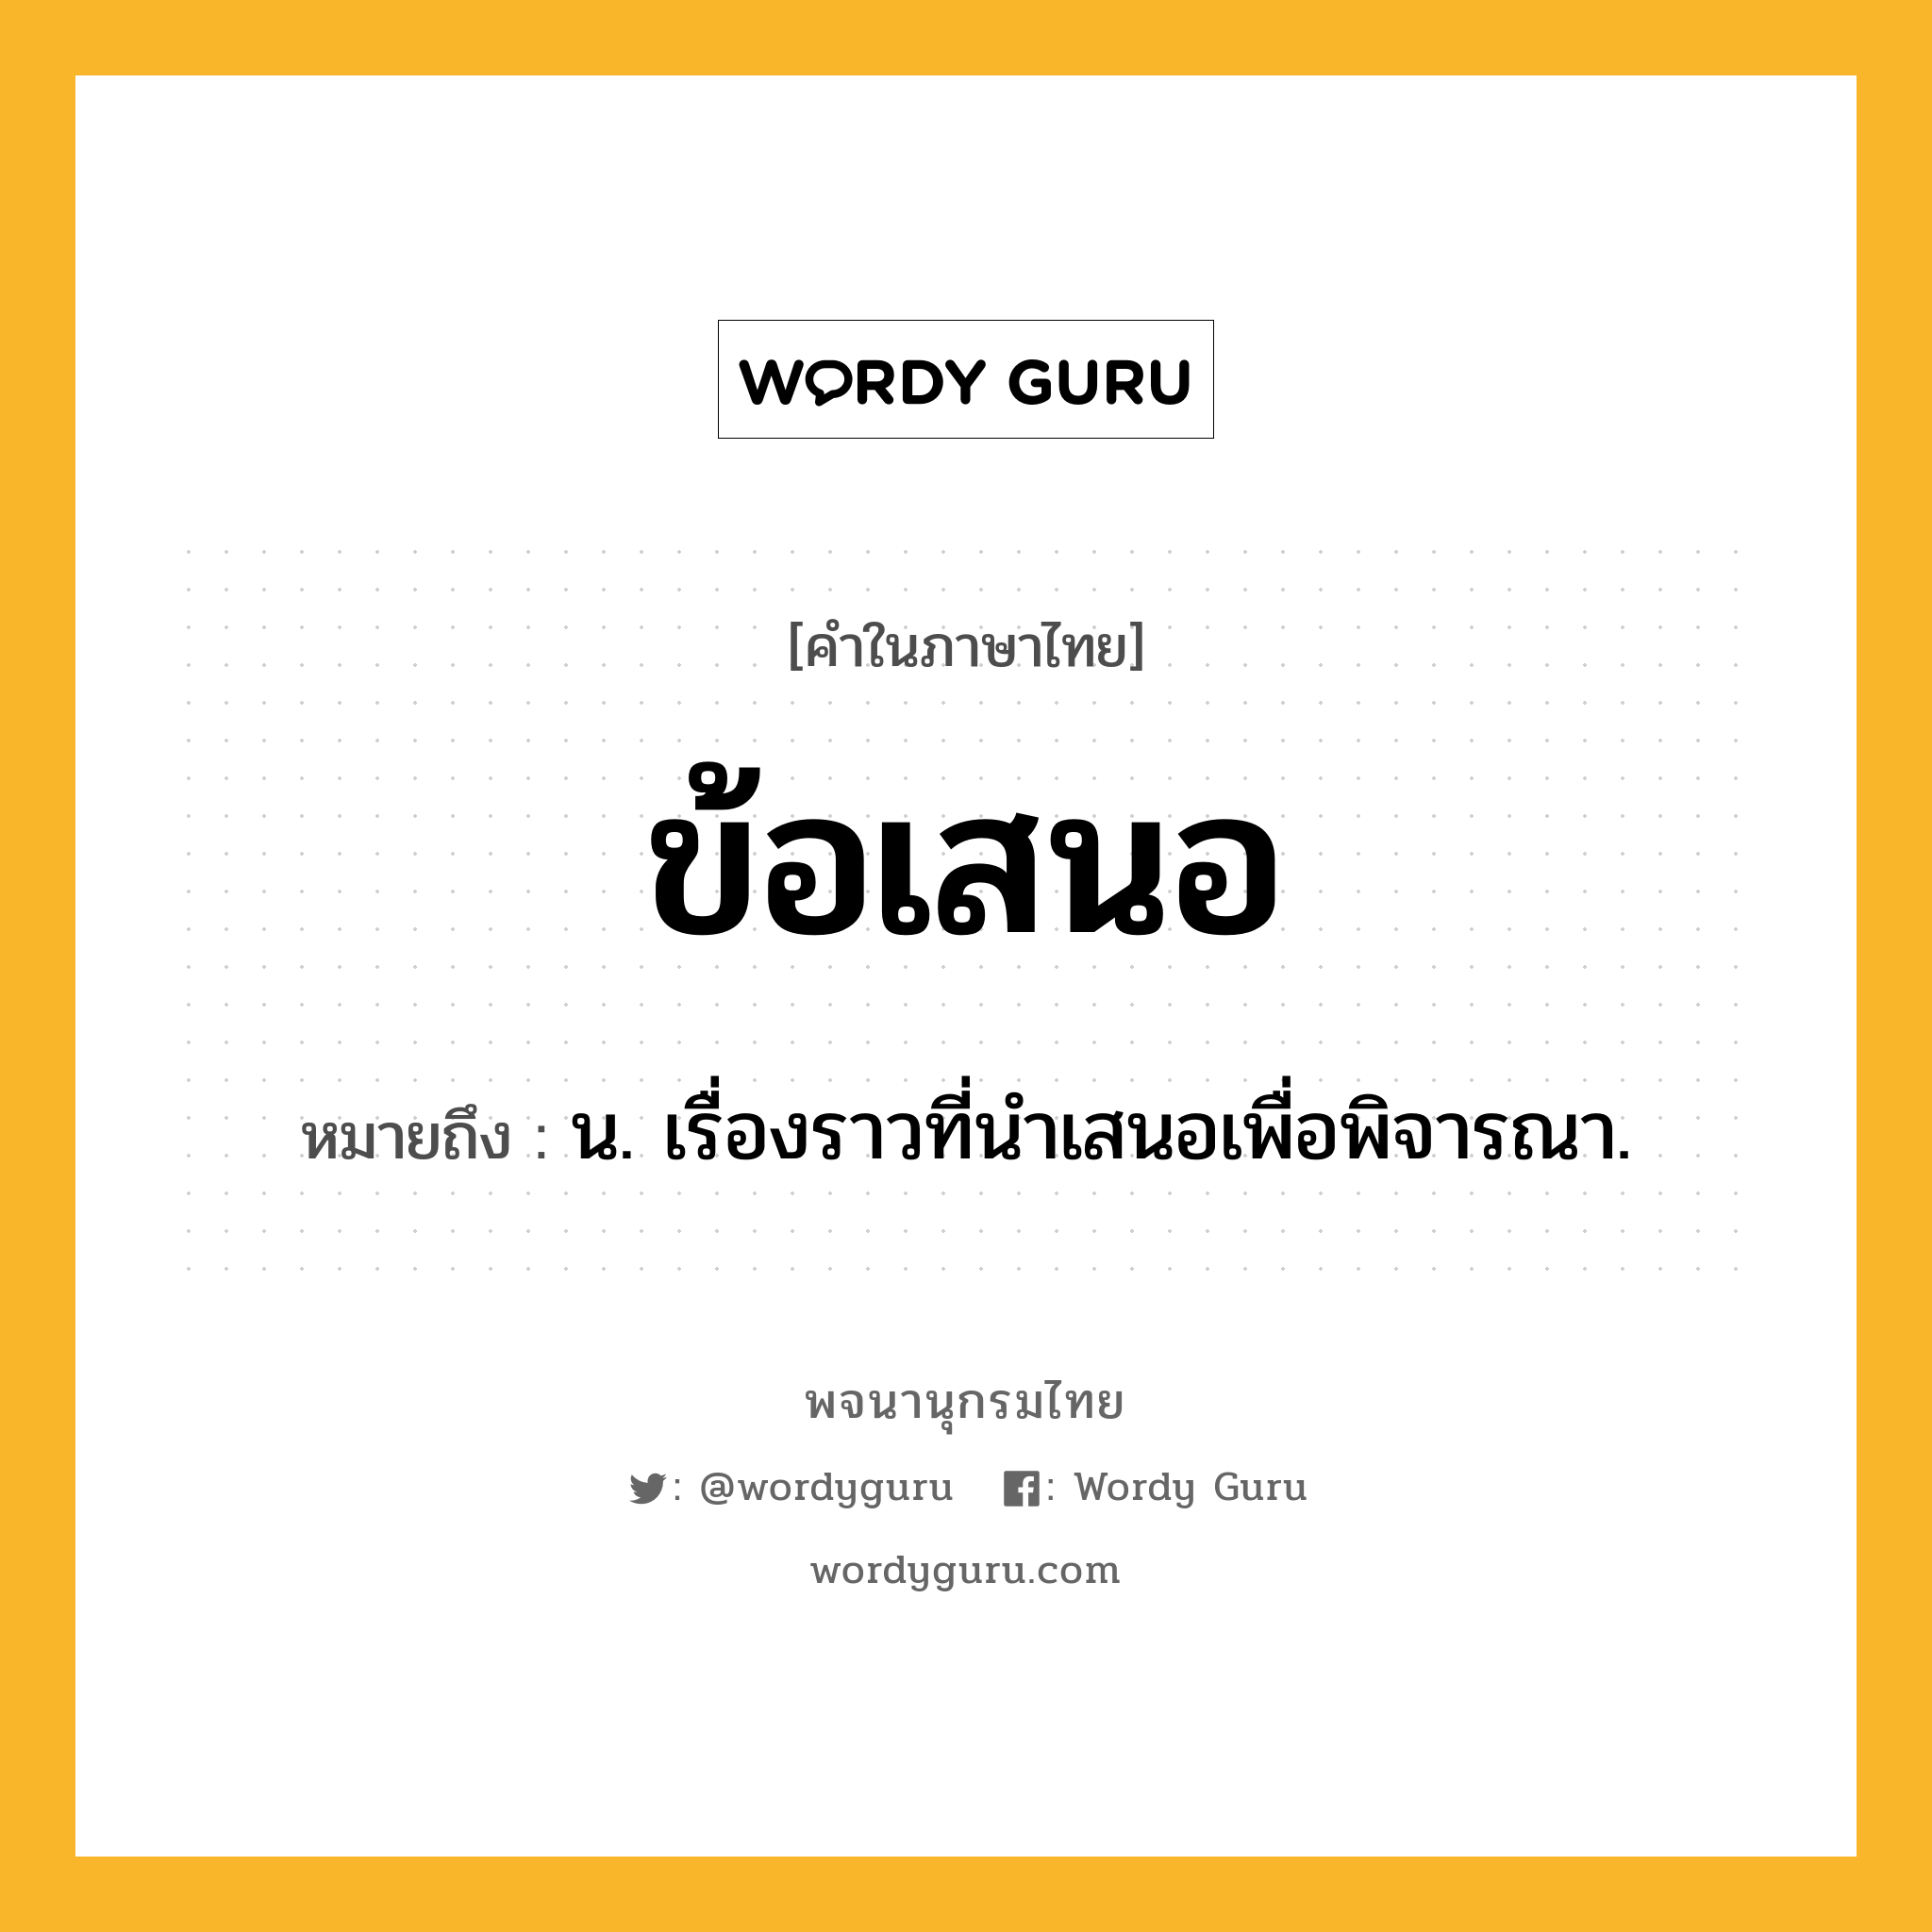 ข้อเสนอ หมายถึงอะไร?, คำในภาษาไทย ข้อเสนอ หมายถึง น. เรื่องราวที่นำเสนอเพื่อพิจารณา.